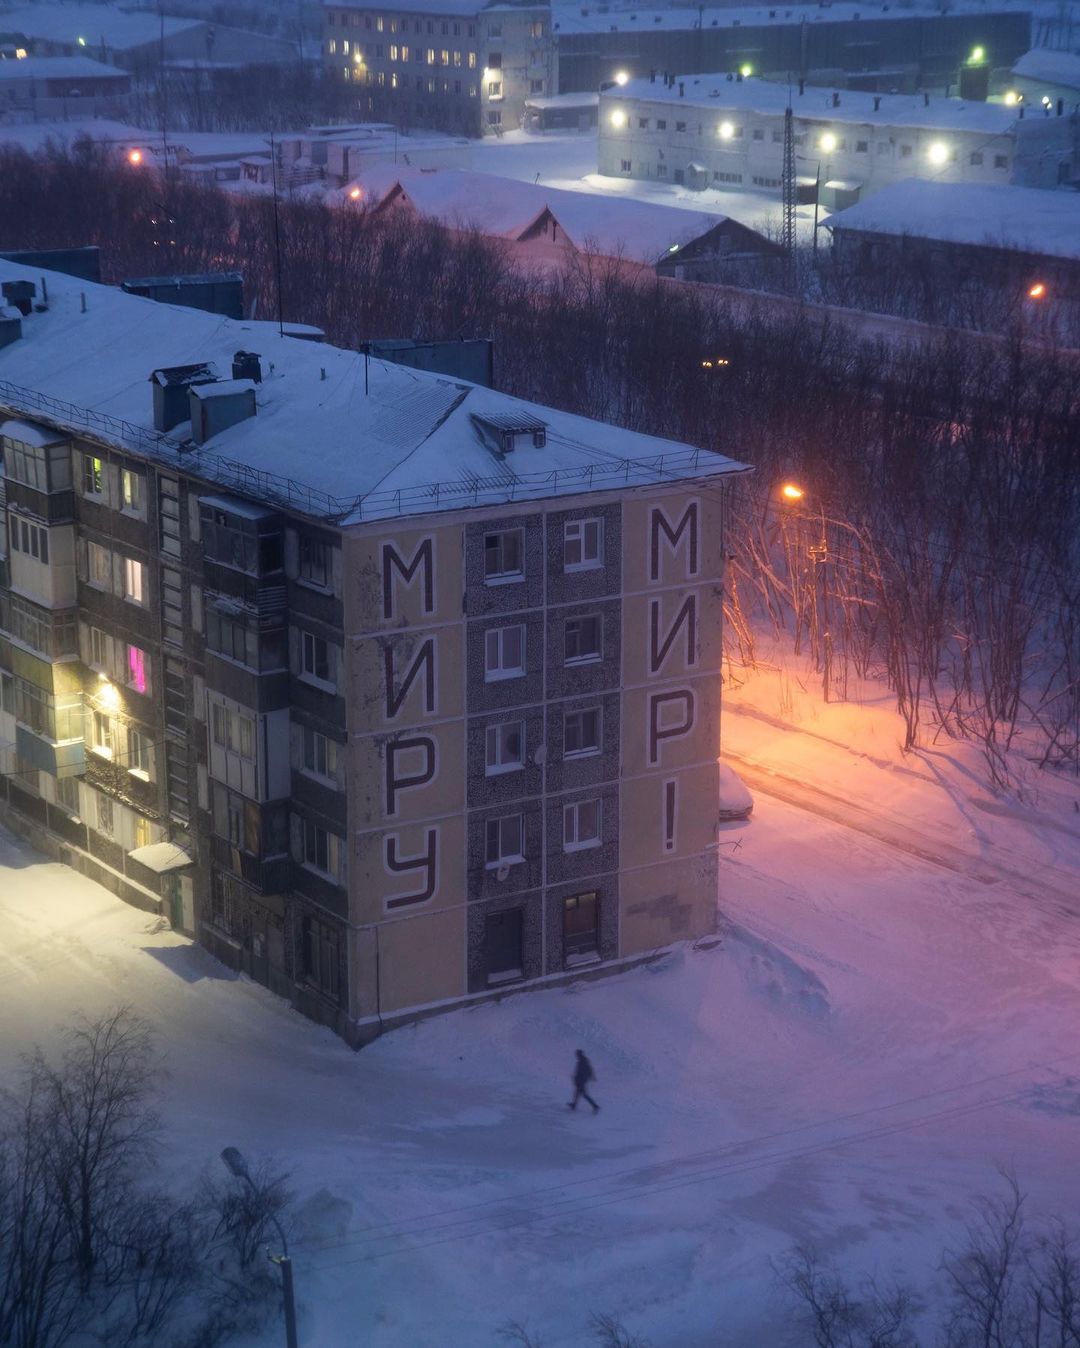 Атмосферные снимки, сделанные в городах постсоветского пространства Арсений, Котов, супрематические, постройки, гдето, степи, уютные, дворики, выглядящие, высоты, тоскливые, такие, родные, «человейники», Своими, работами, делится, Instagram, более, подписчиков